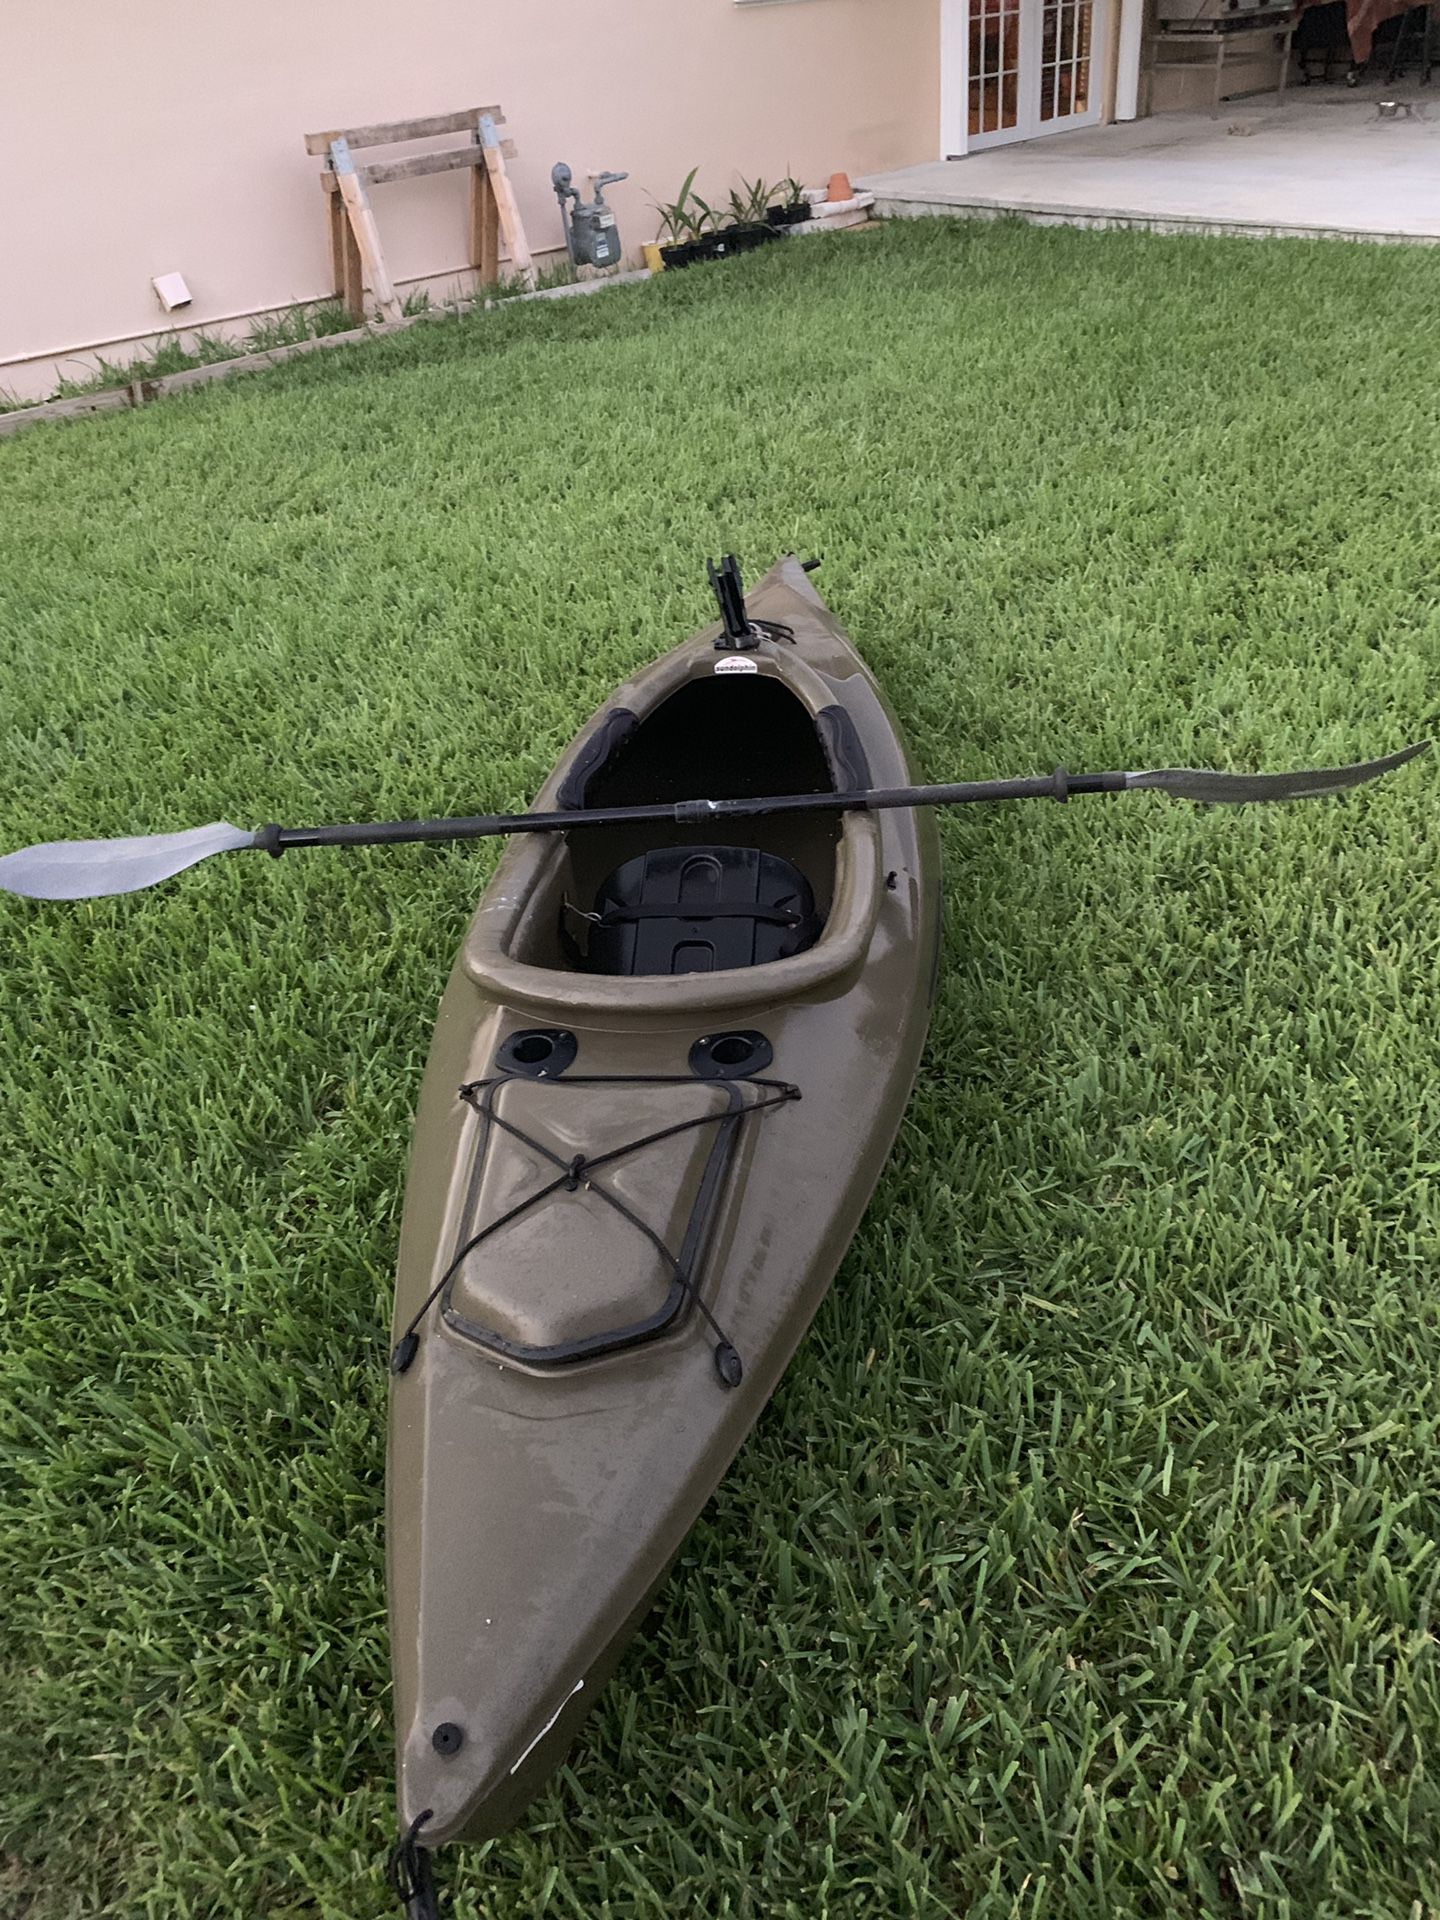 Excursion 10’ fishing kayak